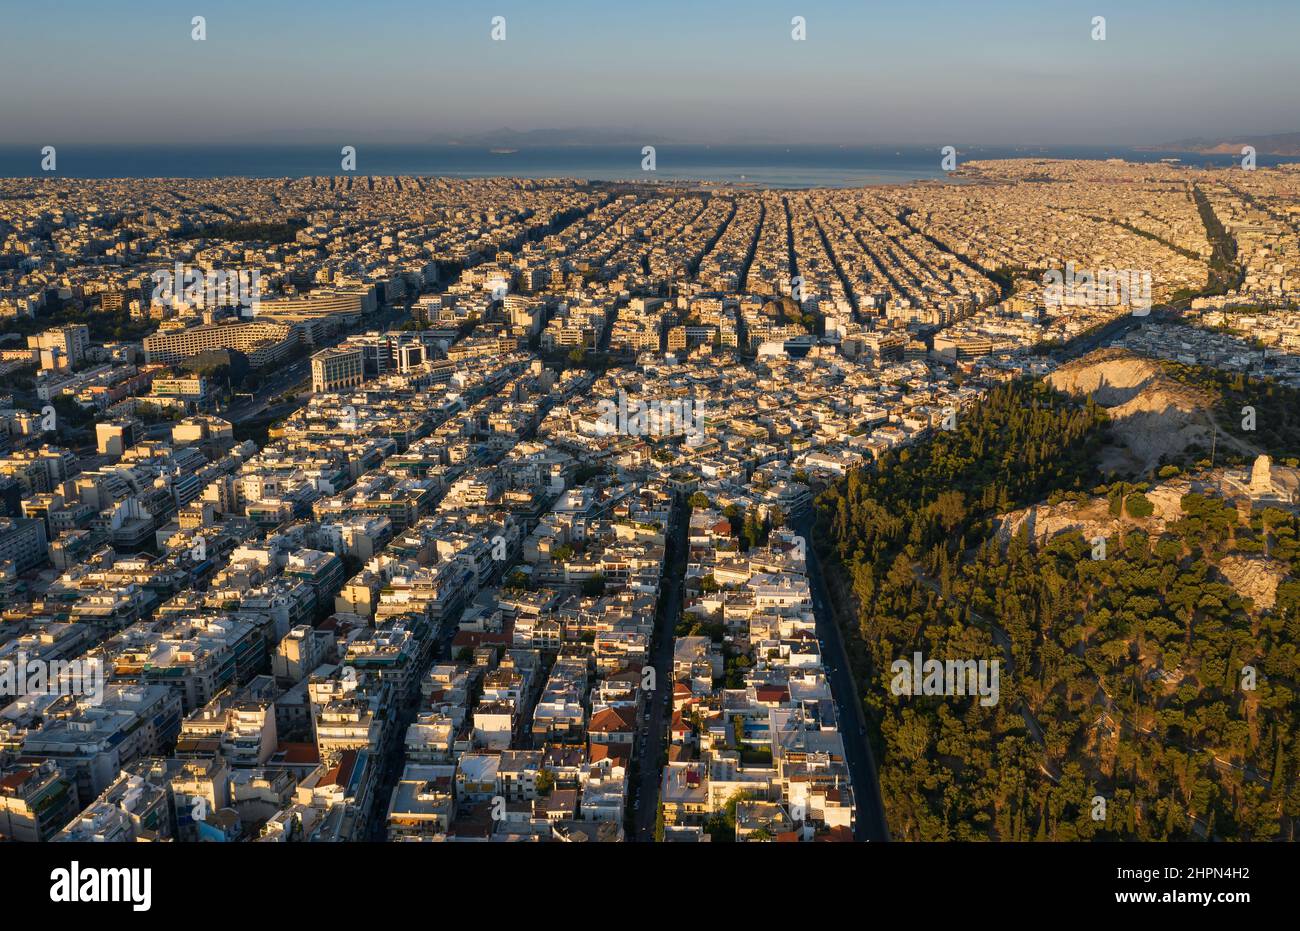 Alba, vista dall'alto della famosa Atene, strade rettangolari e una griglia di edifici, quartieri diretti verso il mare, montagne all'orizzonte, Gree Foto Stock